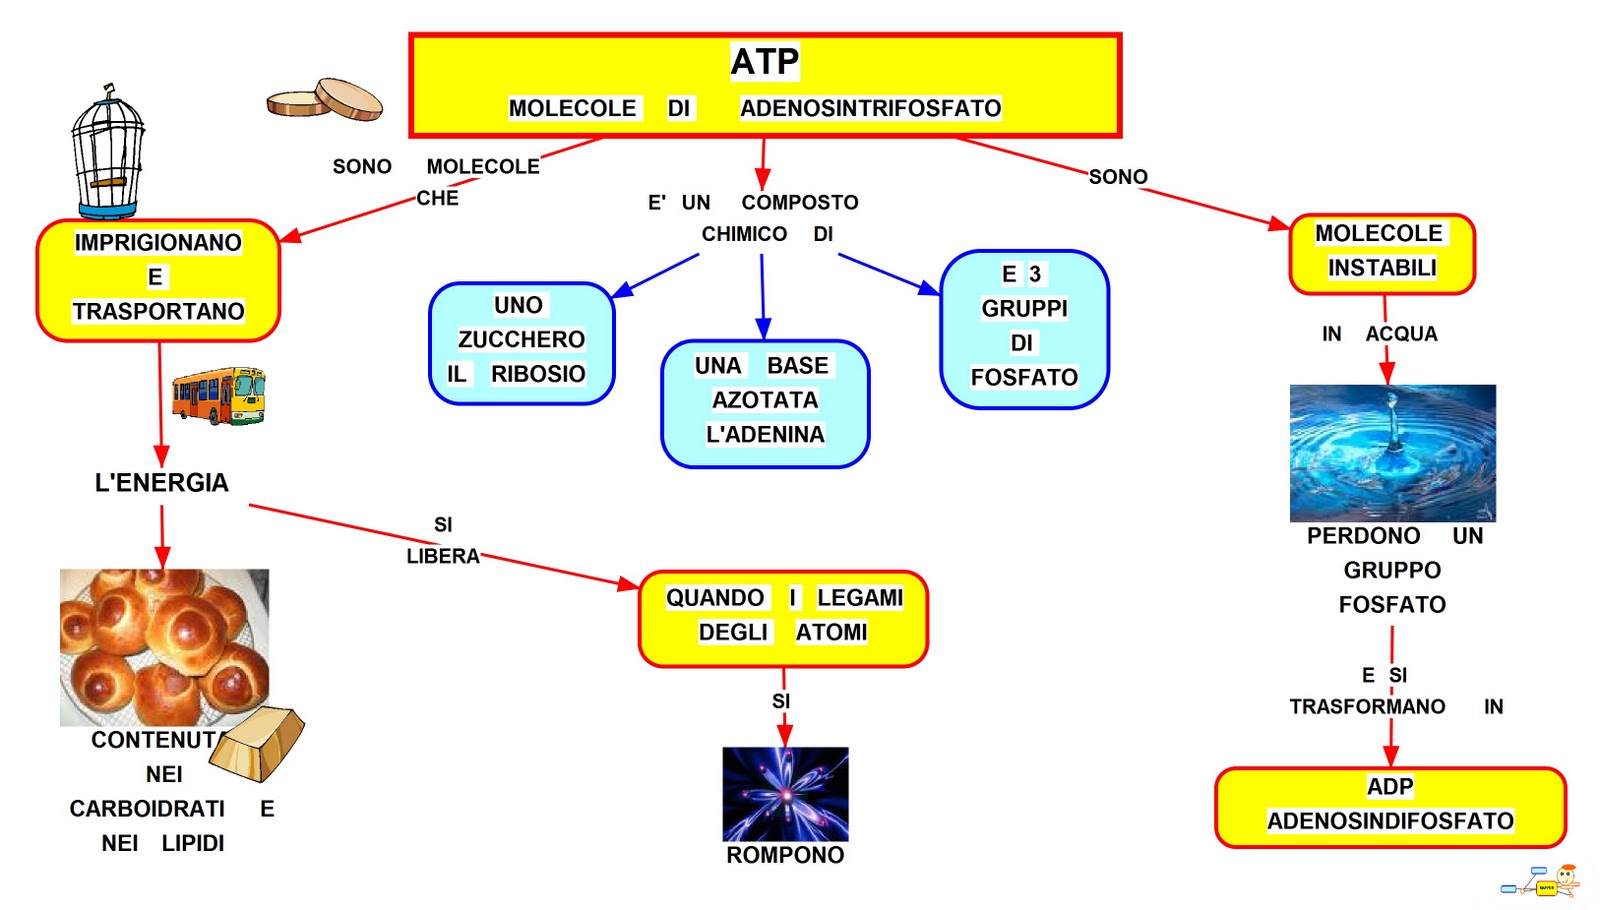 ATP - Molecole di Adenosintrifosfato